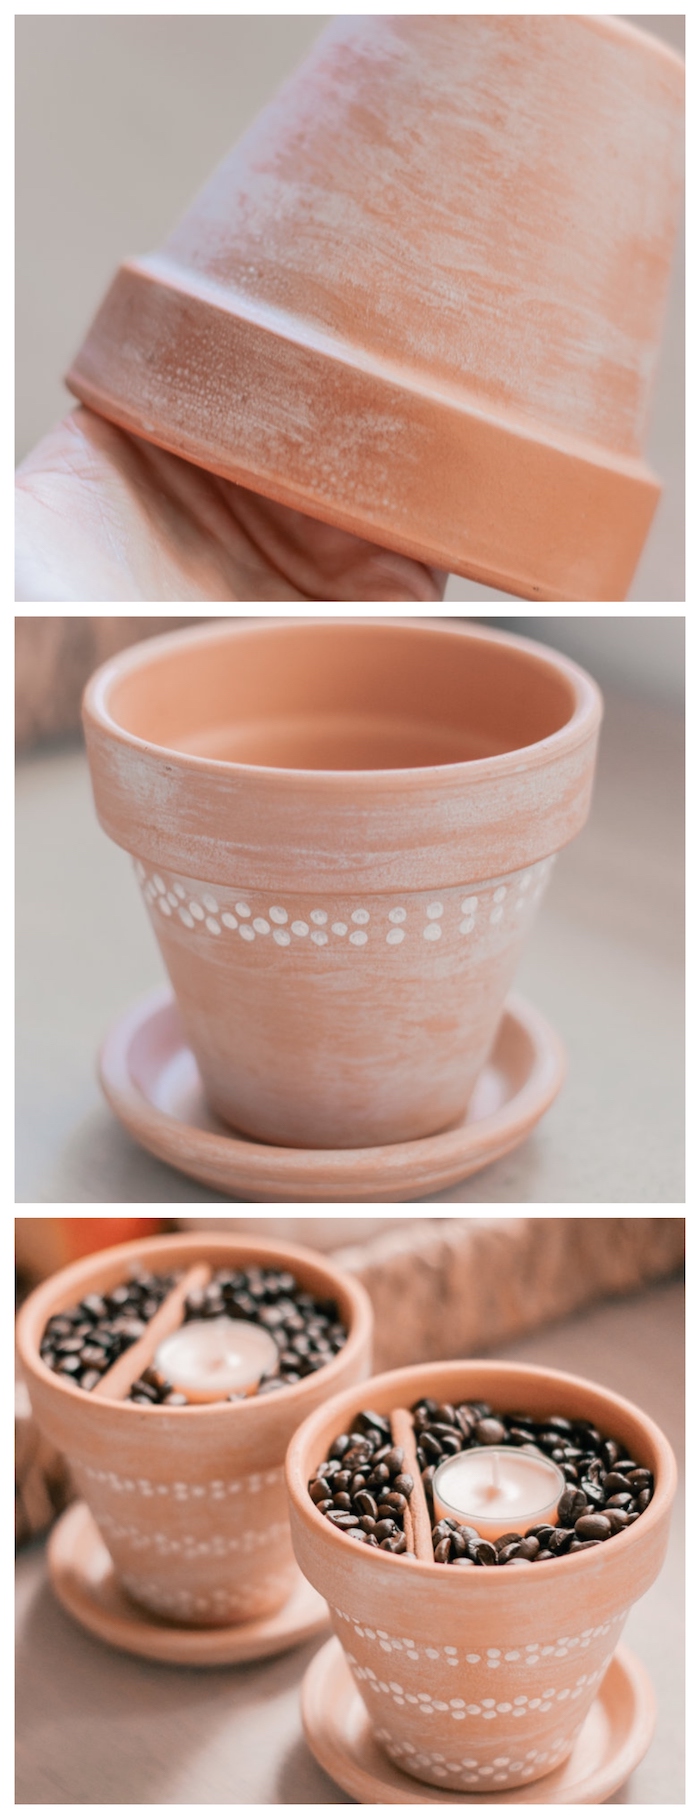 porte bougie diy fabriqué dans un pot de terre cuite recyclé, creation avec des pots de fleurs originale, café, cannelle et bougie